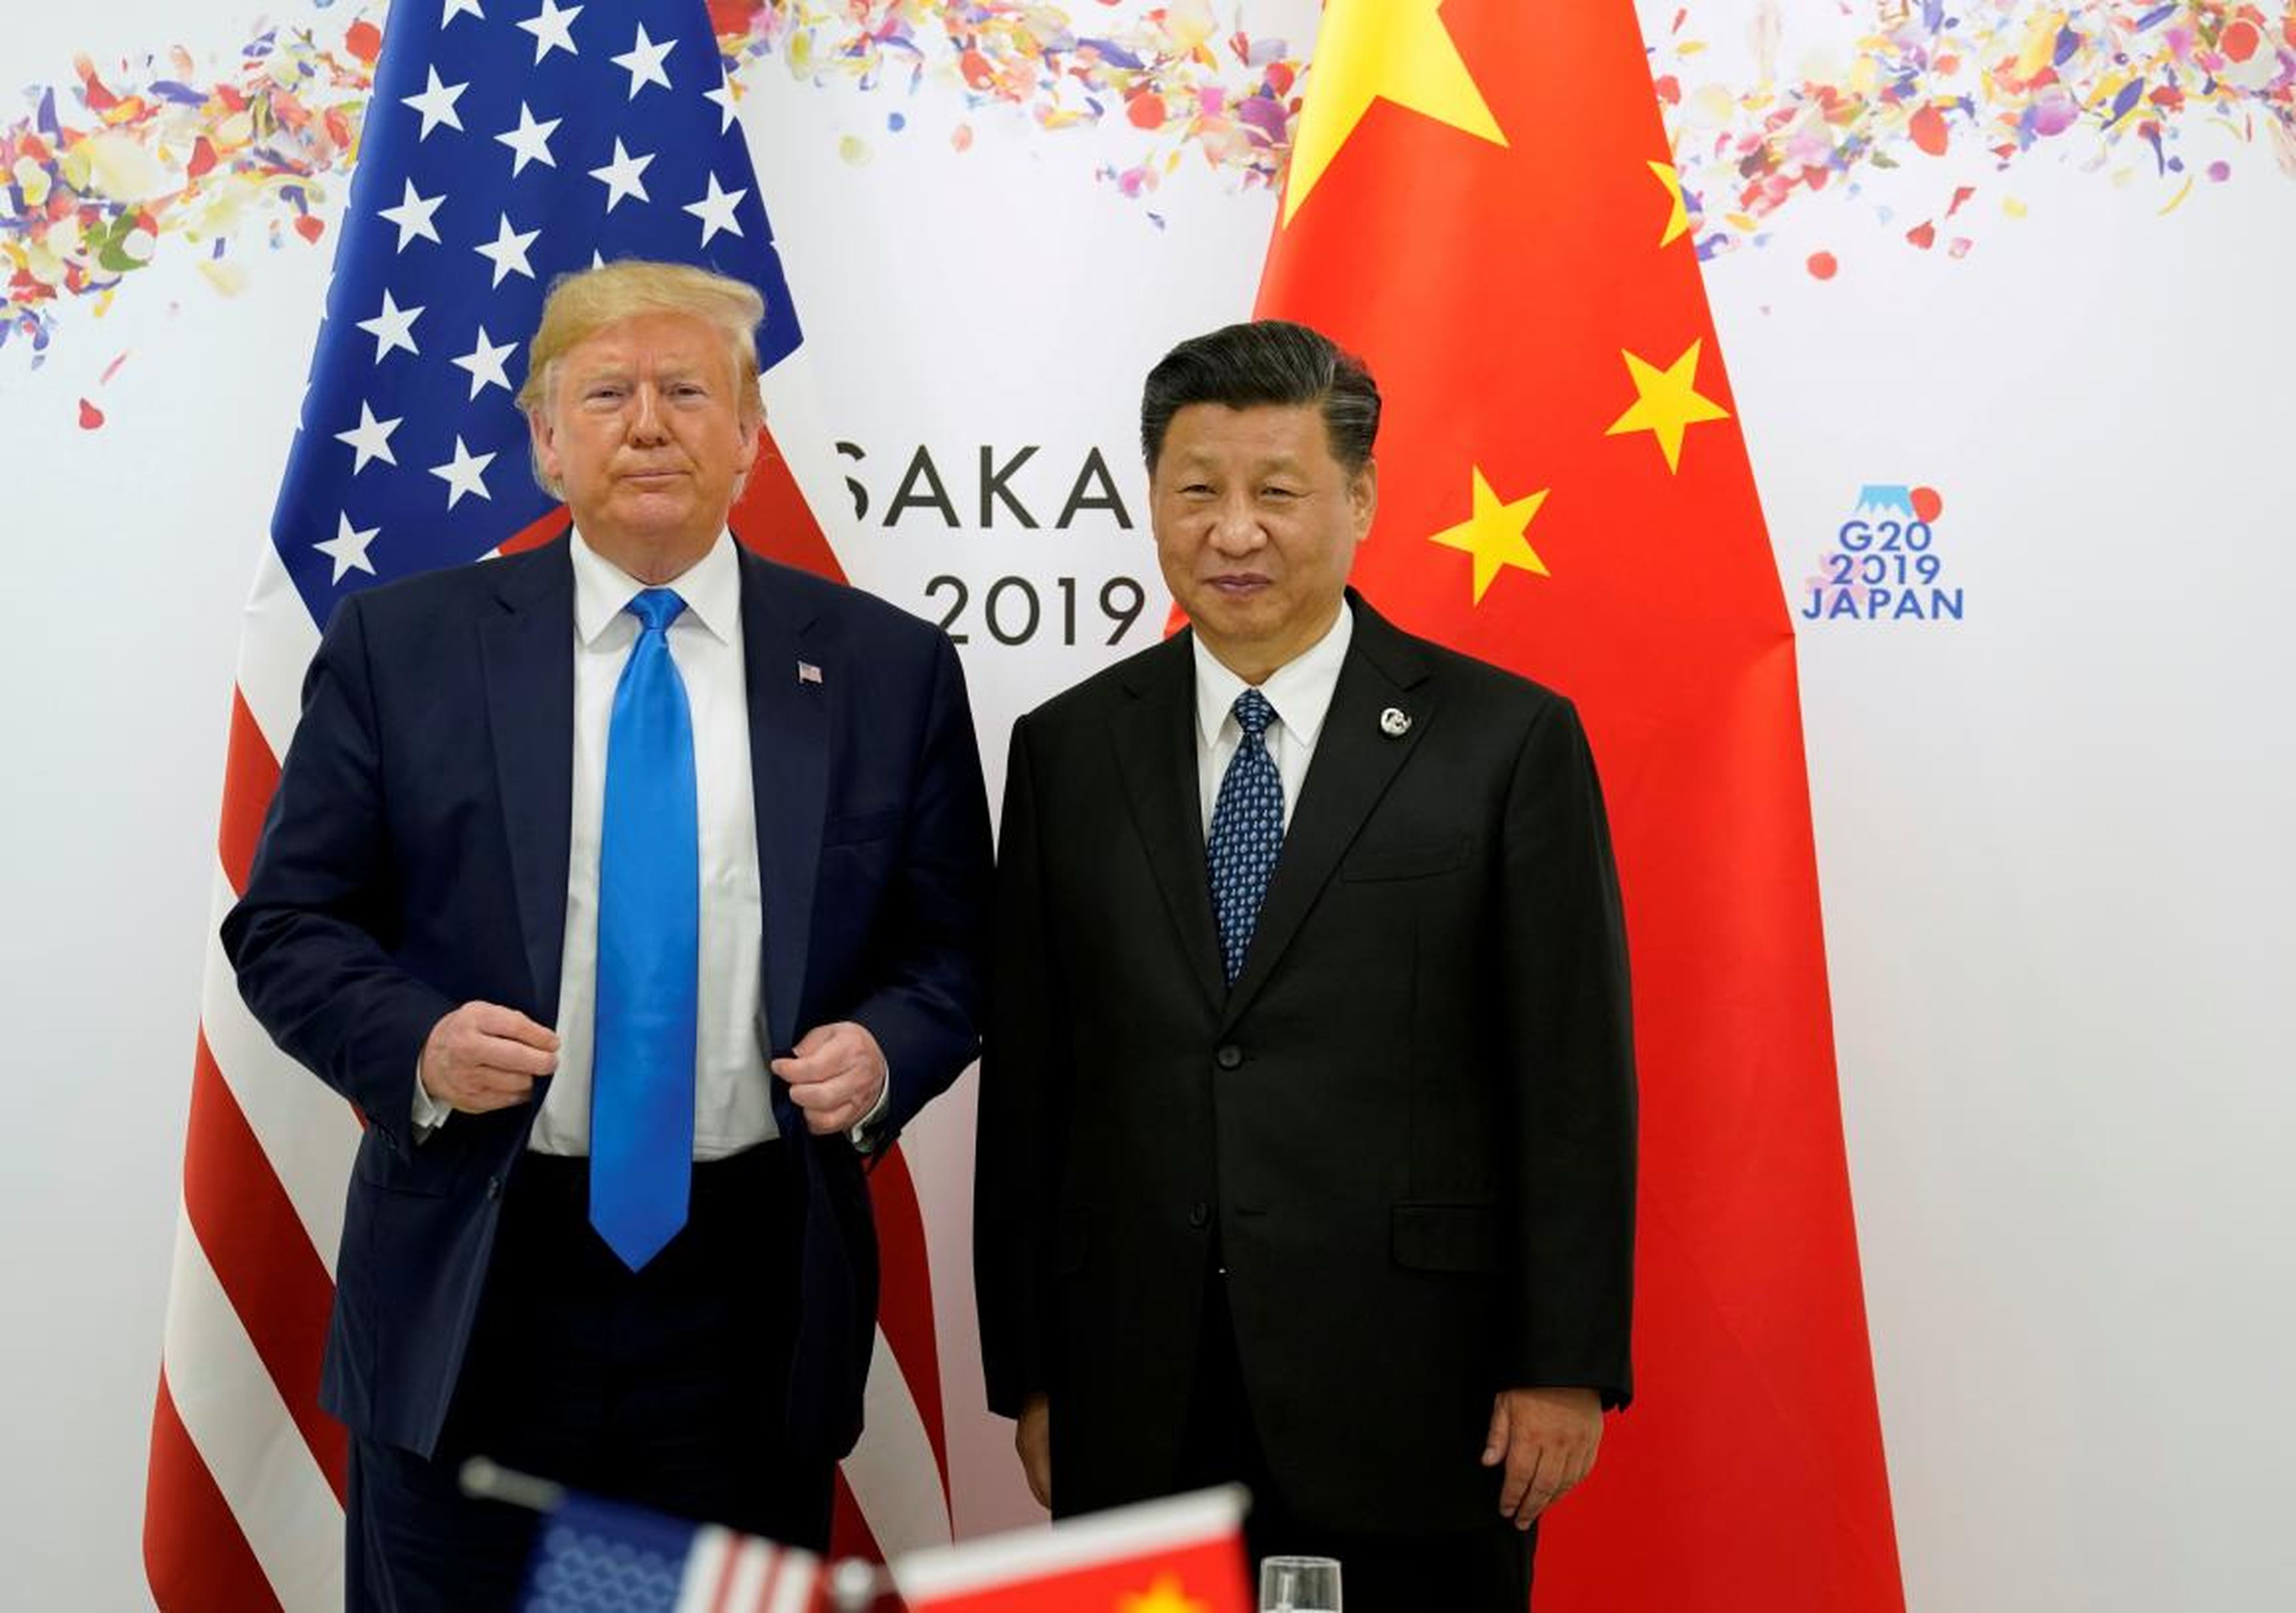 El presidente de Estados Unidos, Donald Trump, y el presidente de China, Xi Jinping, posan para una foto antes de su reunión bilateral durante la cumbre de líderes del G20 en Osaka, Japón, el 29 de junio de 2019.